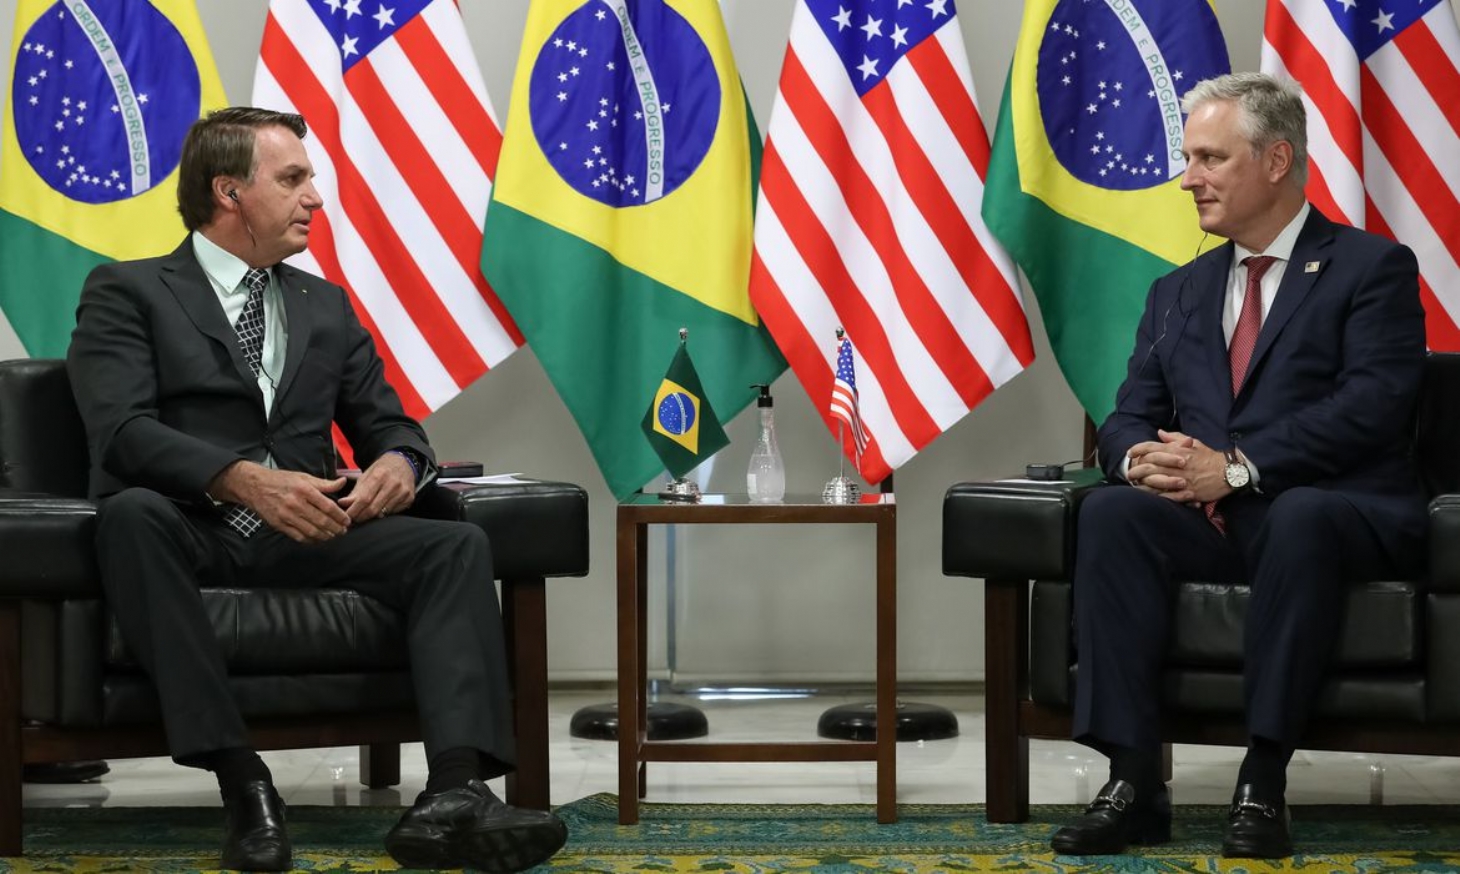 Brasil e banco americano assinam acordo de US$ 1 bi em investimentos | Jornal da Orla